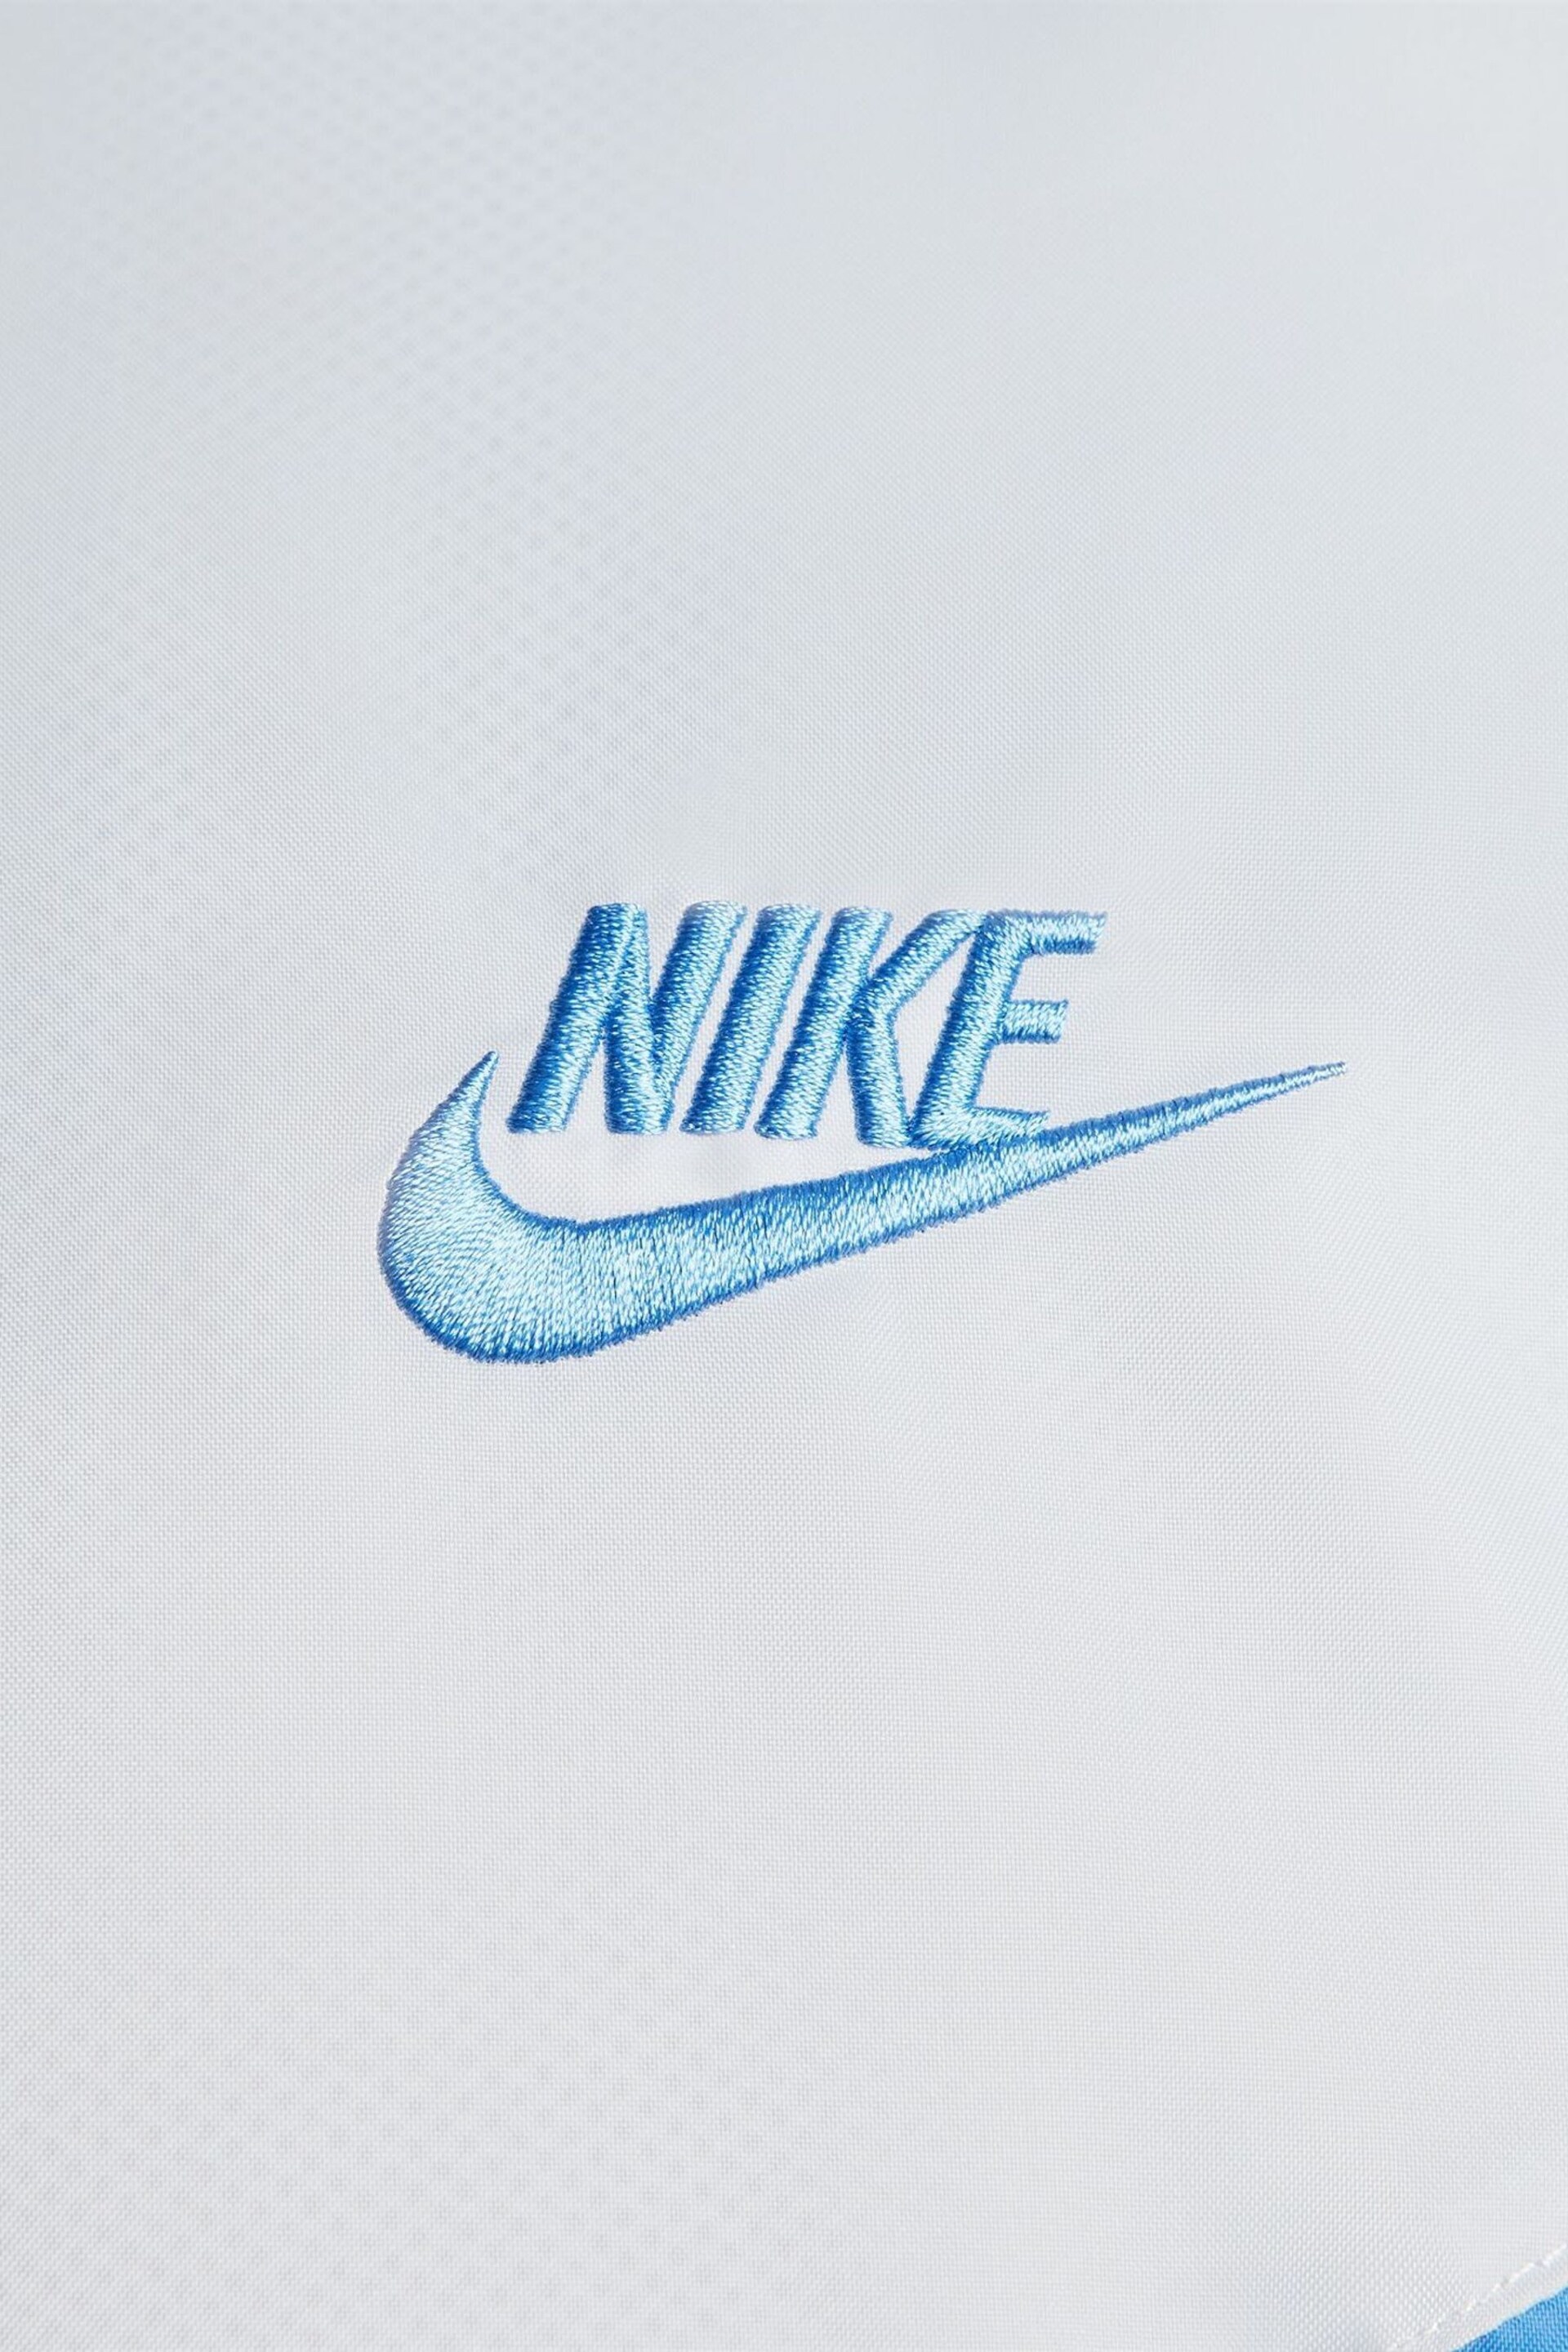 Nike Blue/Grey Sportswear Windrunner Hooded Jacket - Image 14 of 14